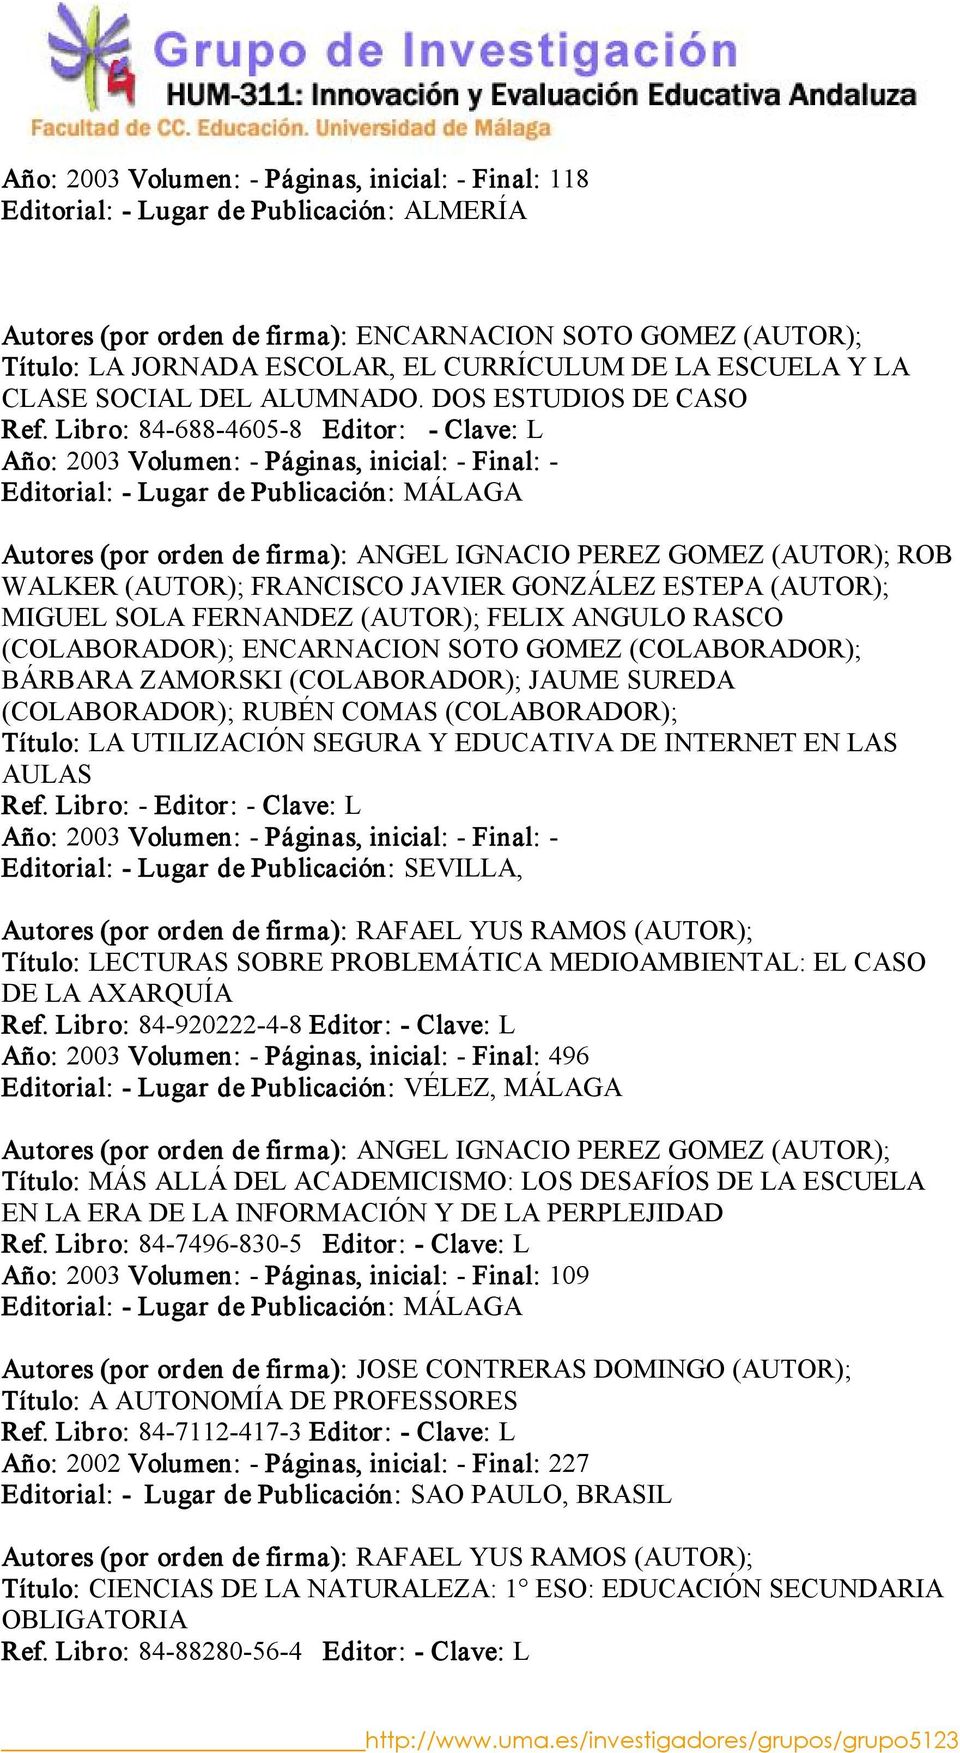 Libro: 84 688 4605 8 Editor: Clave: L Año: 2003 Volumen: Páginas, inicial: Final: Autores (por orden de firma): ANGEL IGNACIO PEREZ GOMEZ (AUTOR); ROB WALKER (AUTOR); FRANCISCO JAVIER GONZÁLEZ ESTEPA